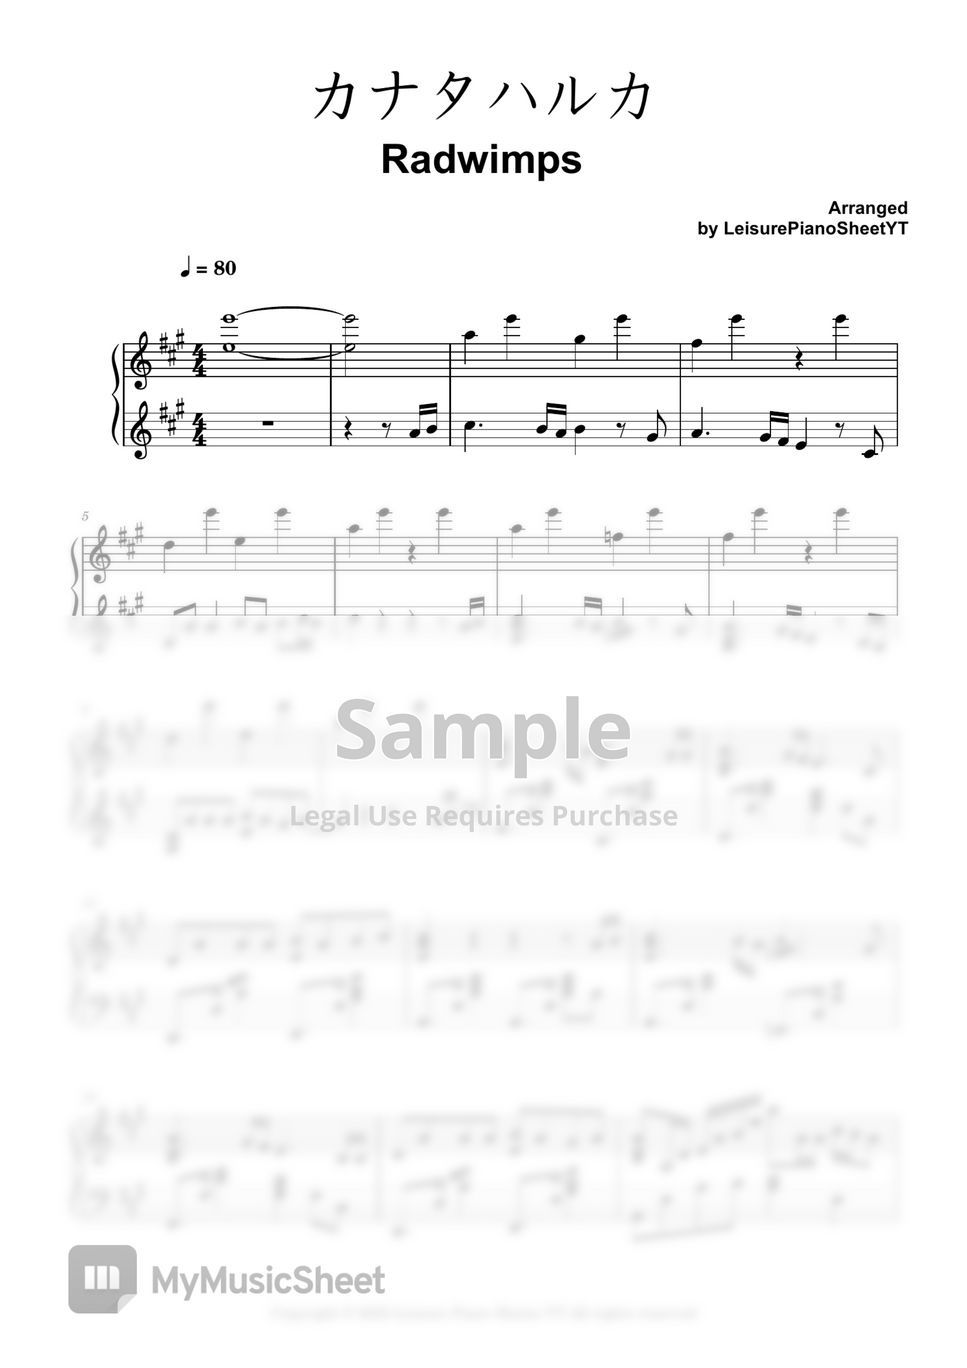 ラッドウインプス - カナタハルカ (すずめの戸締まり) by Leisure Piano Sheets YT